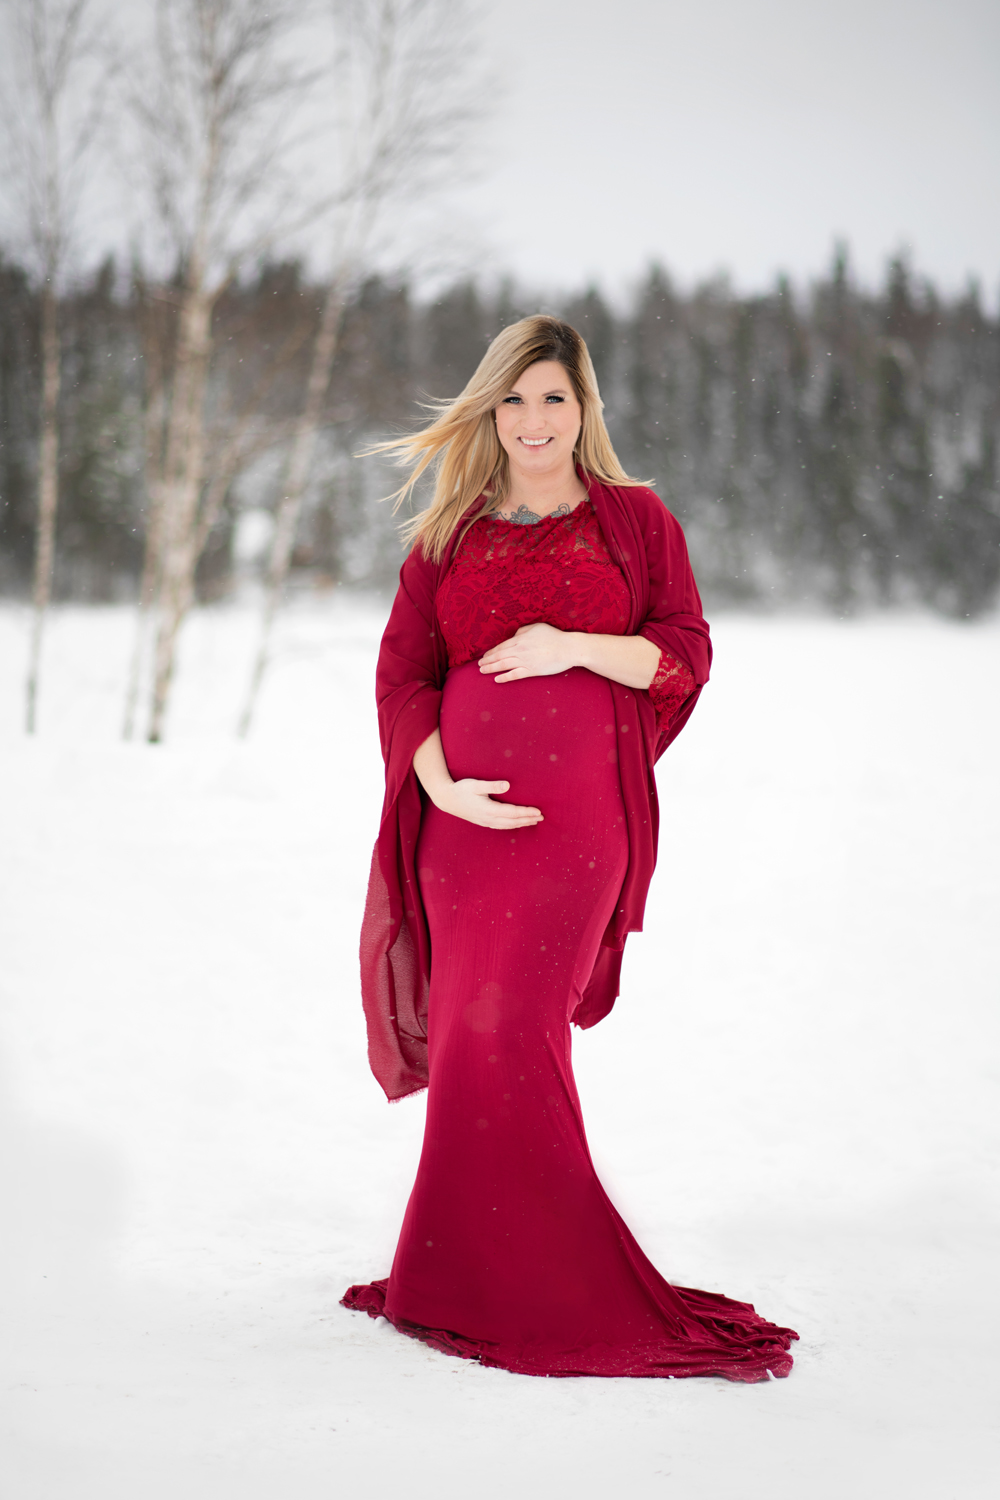 séance maternité hivers robe rouge neige val-d'or